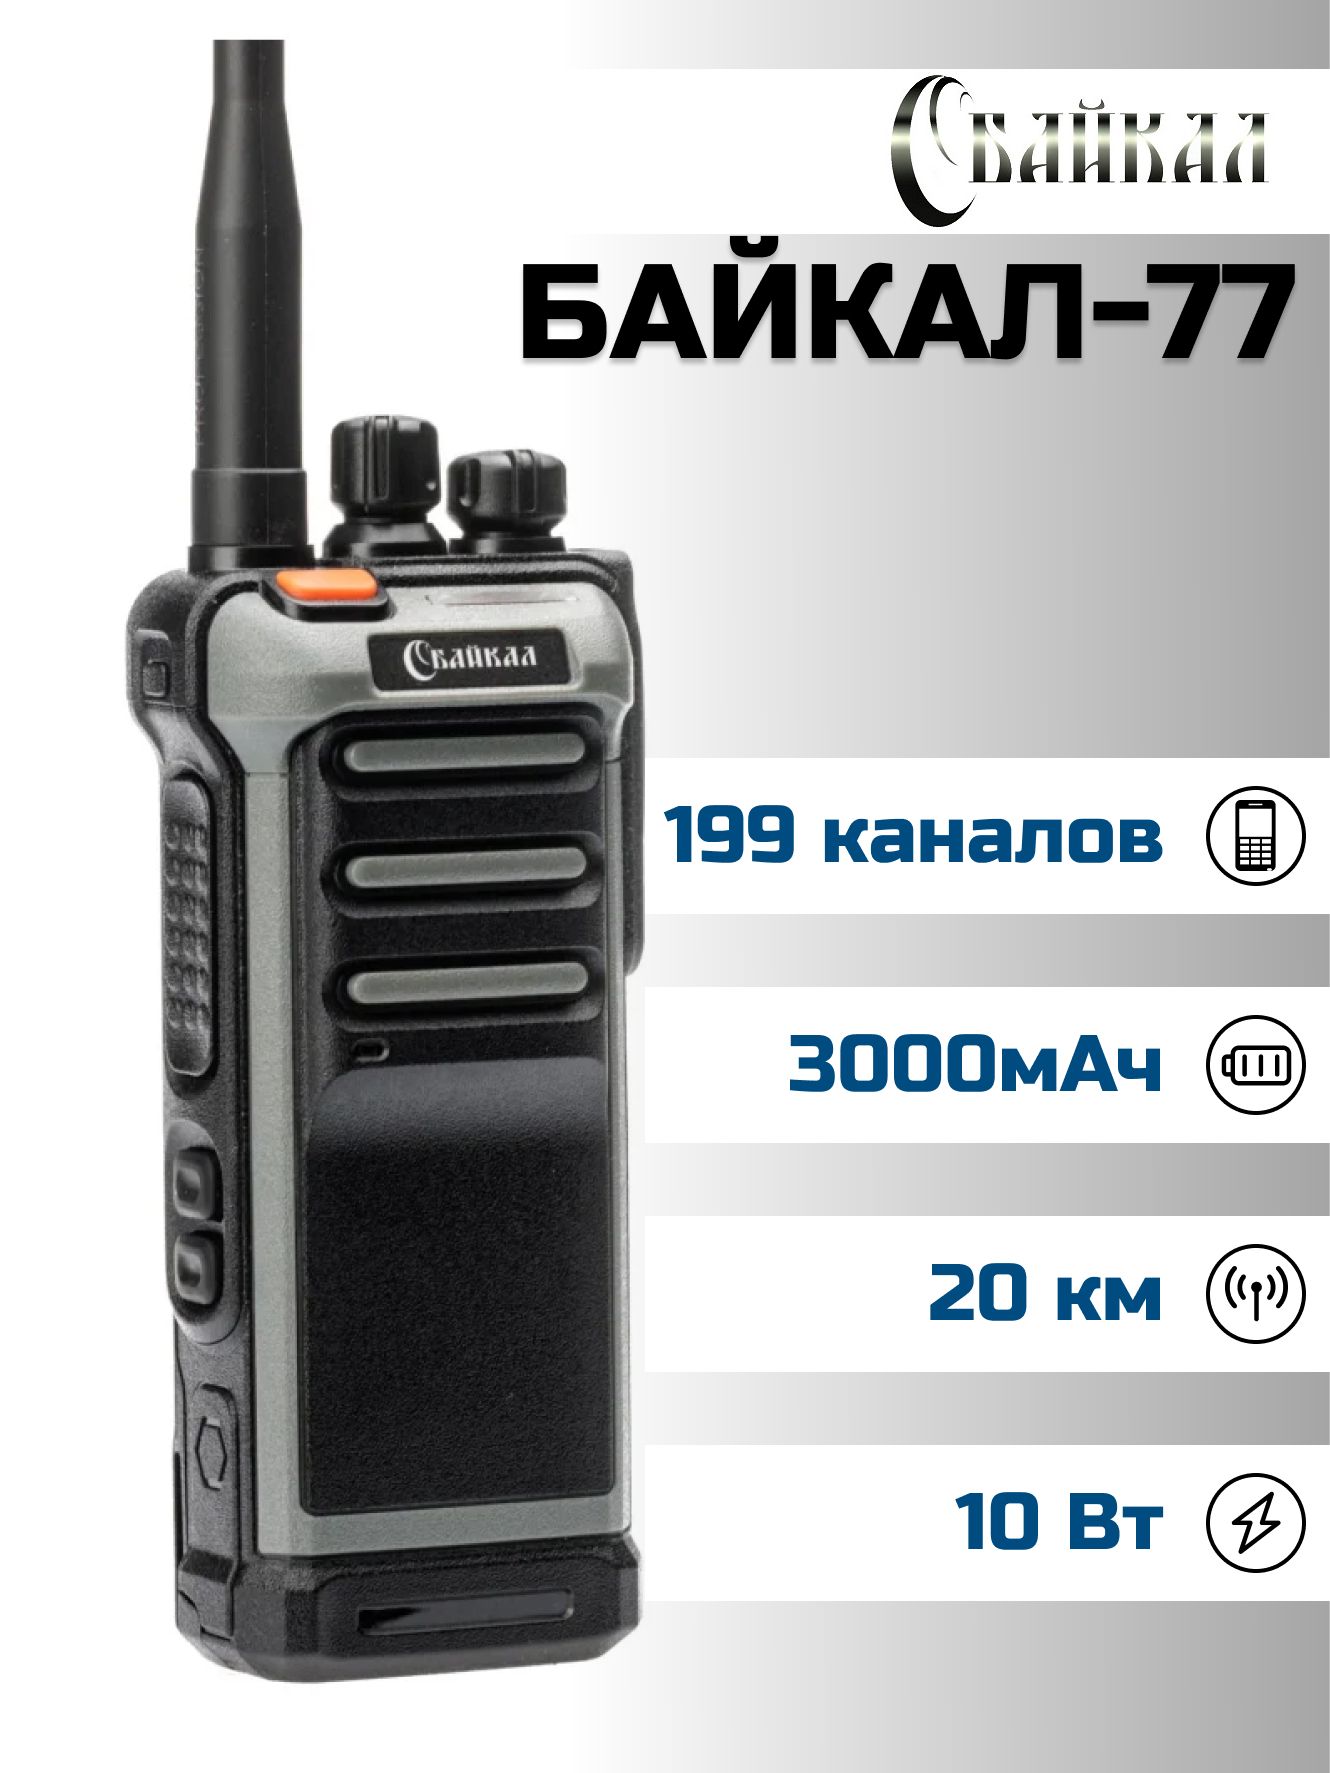 Портативная радиостанция Байкал-77 (136-174 МГц), 199 кан., 10Вт, 3000 мАч (серо-черная)